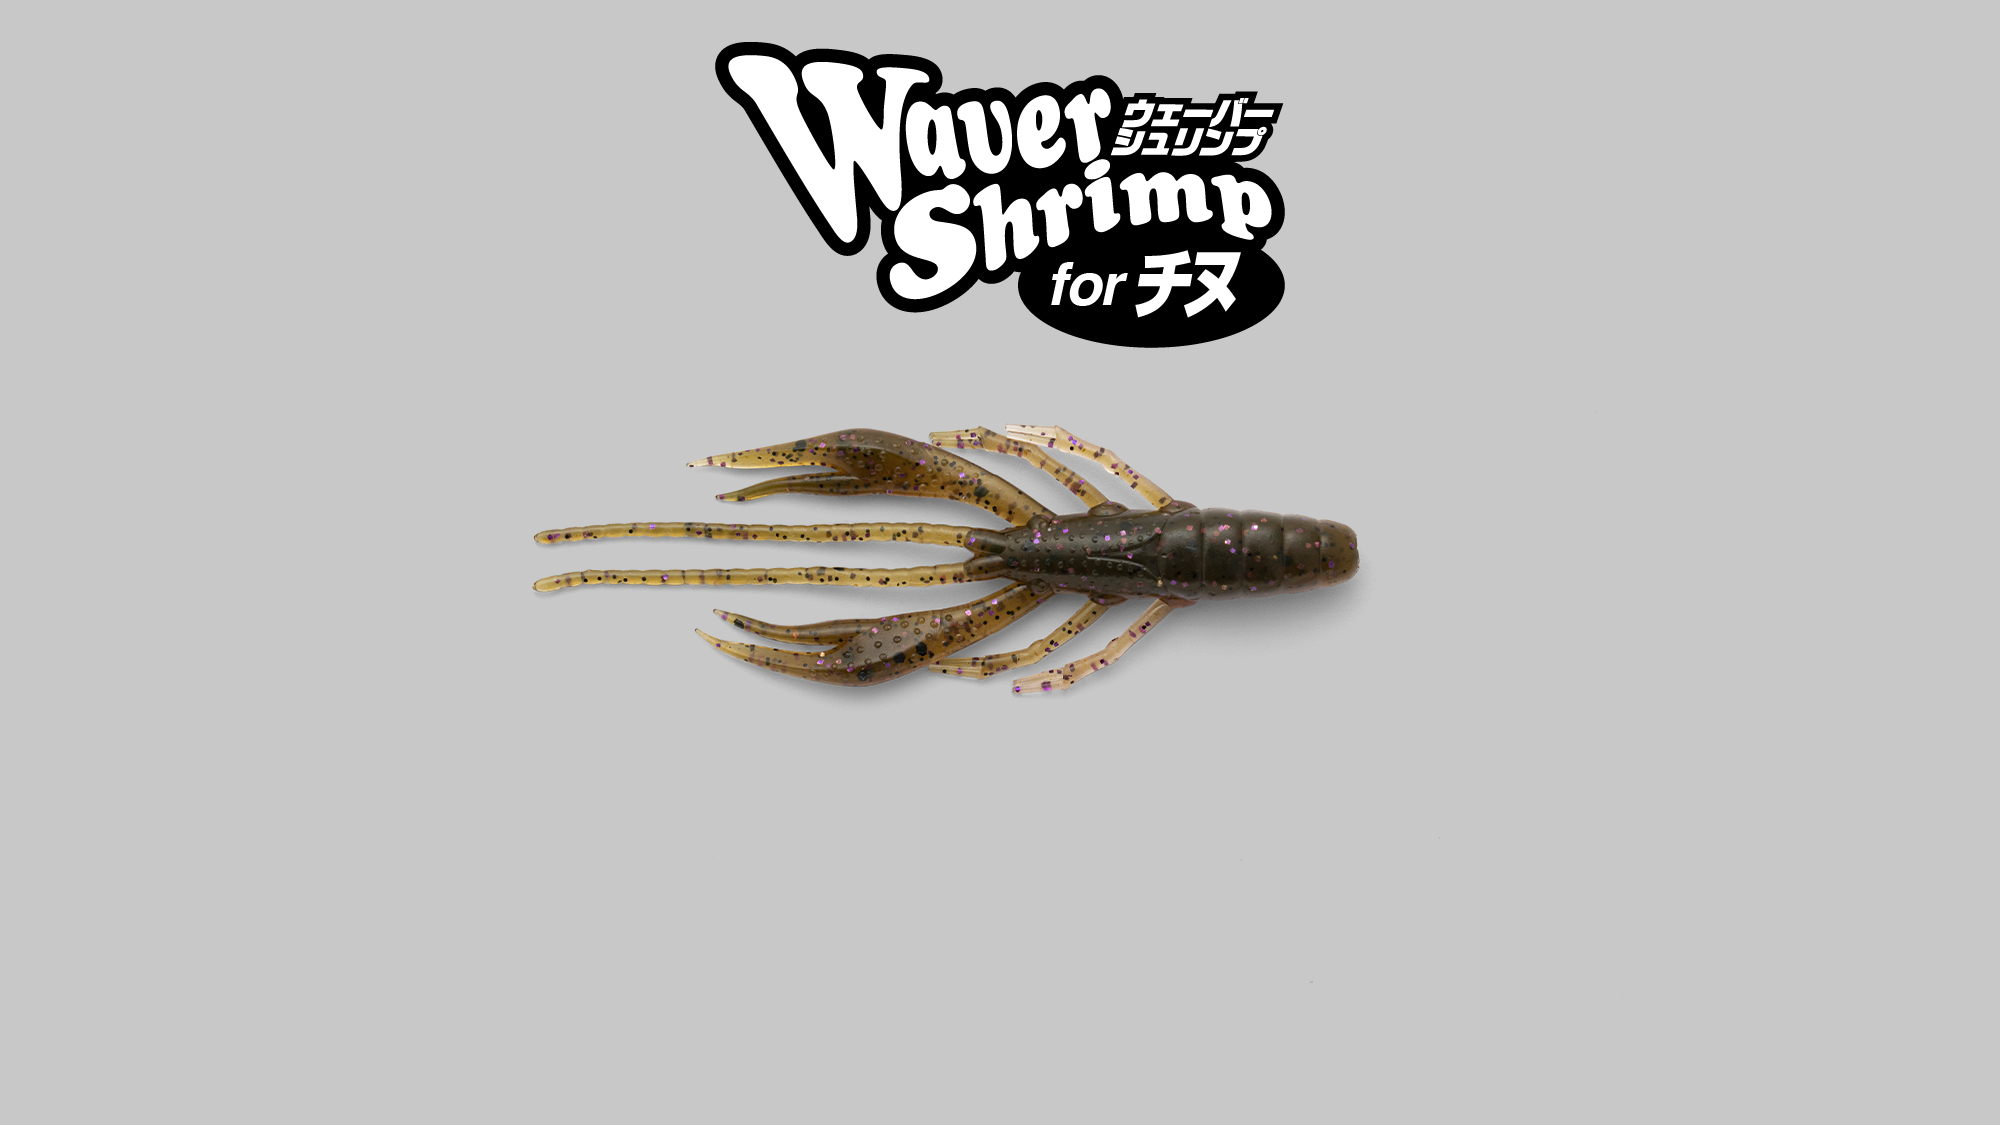 ウェーバーシュリンプ 2.8″ for チヌ Waver Shrimp 2.8″ for チヌ